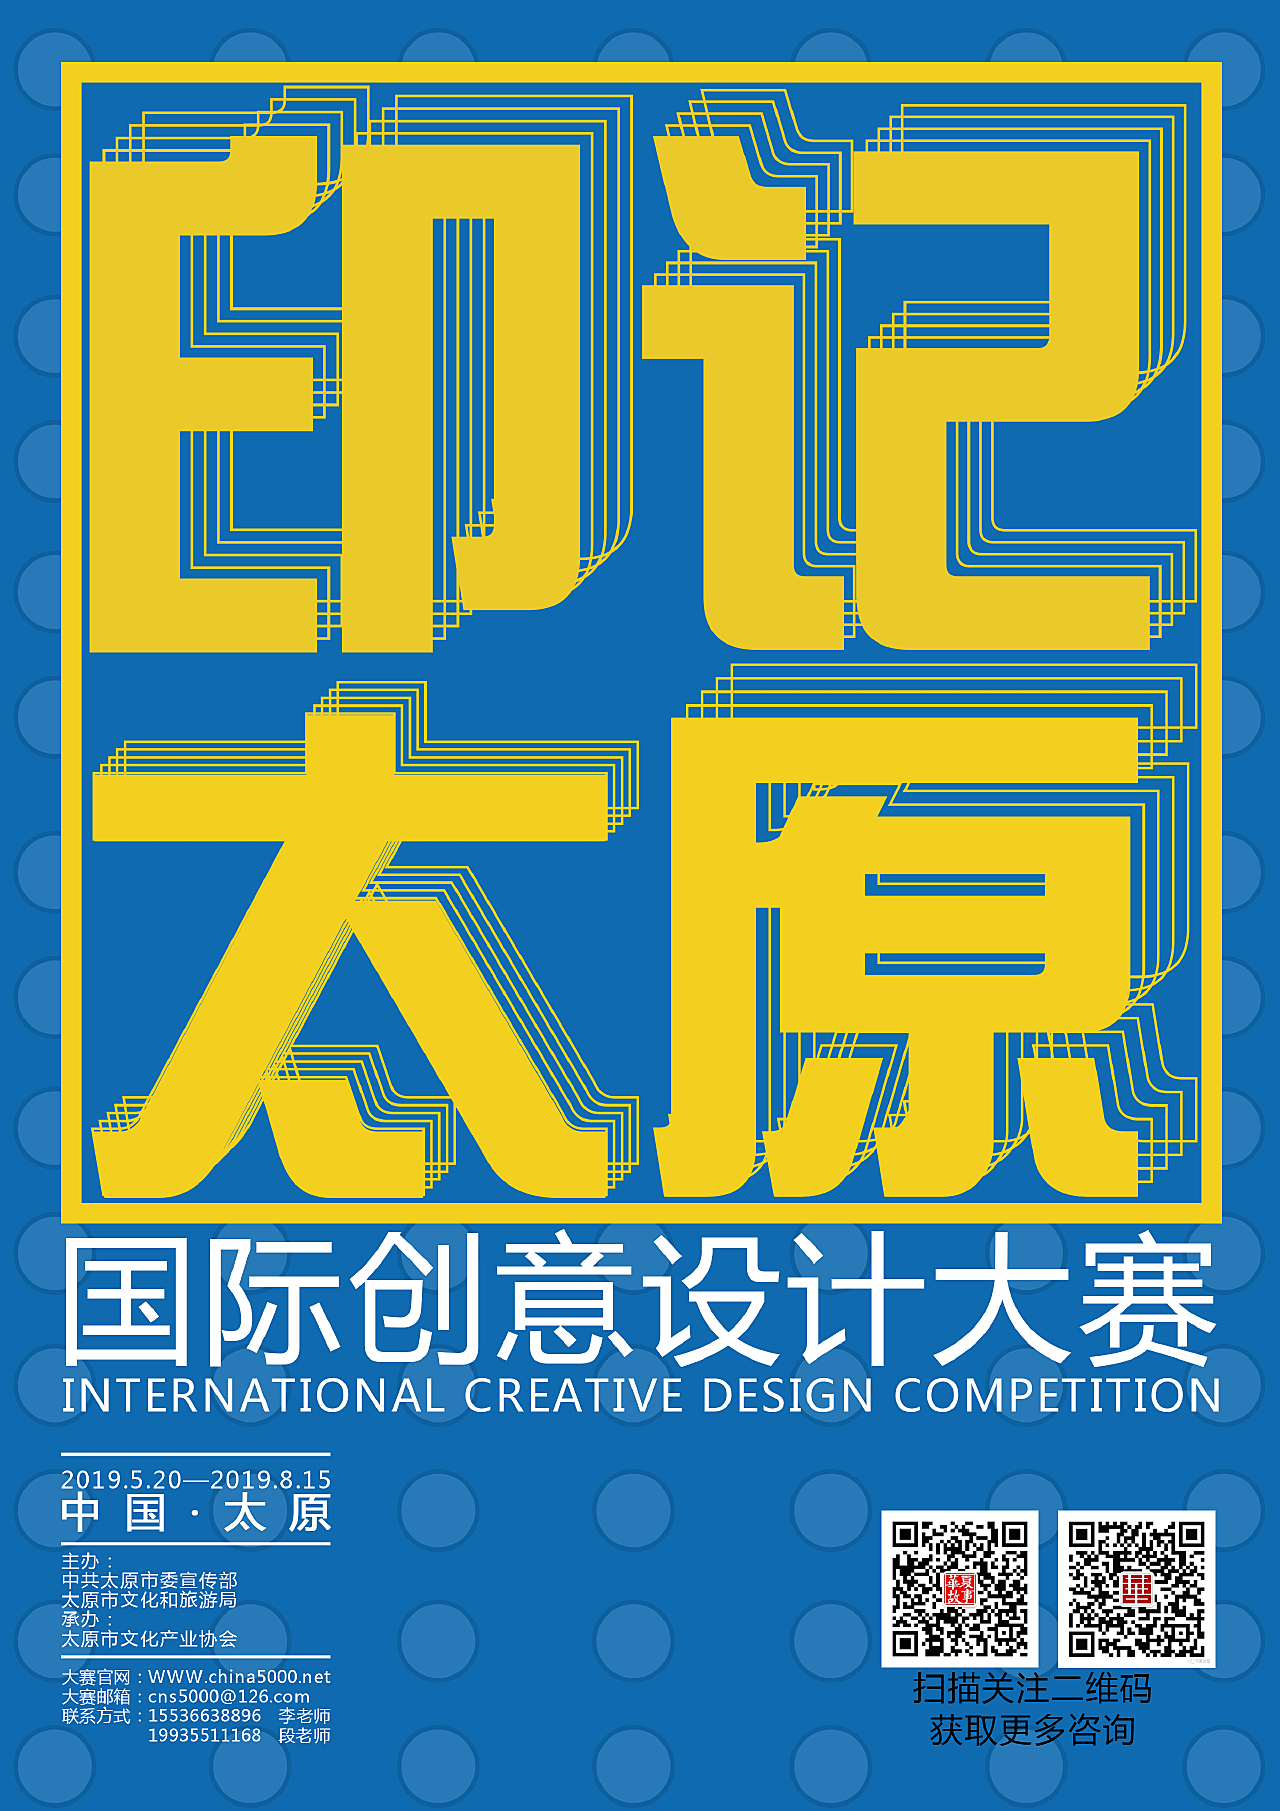 创意中国设计大赛官网__创意垃圾桶设计大赛